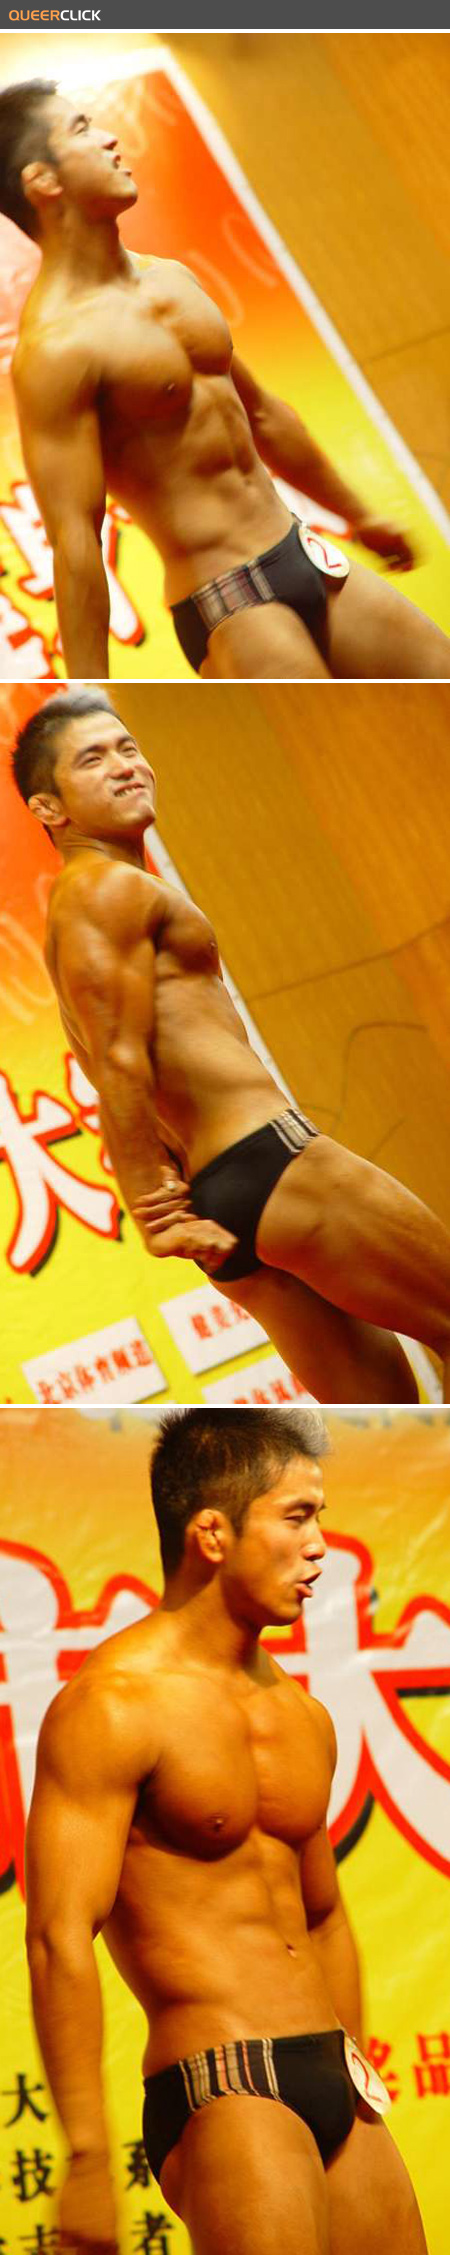 hot_asian_bodybuilder_001_2.jpg